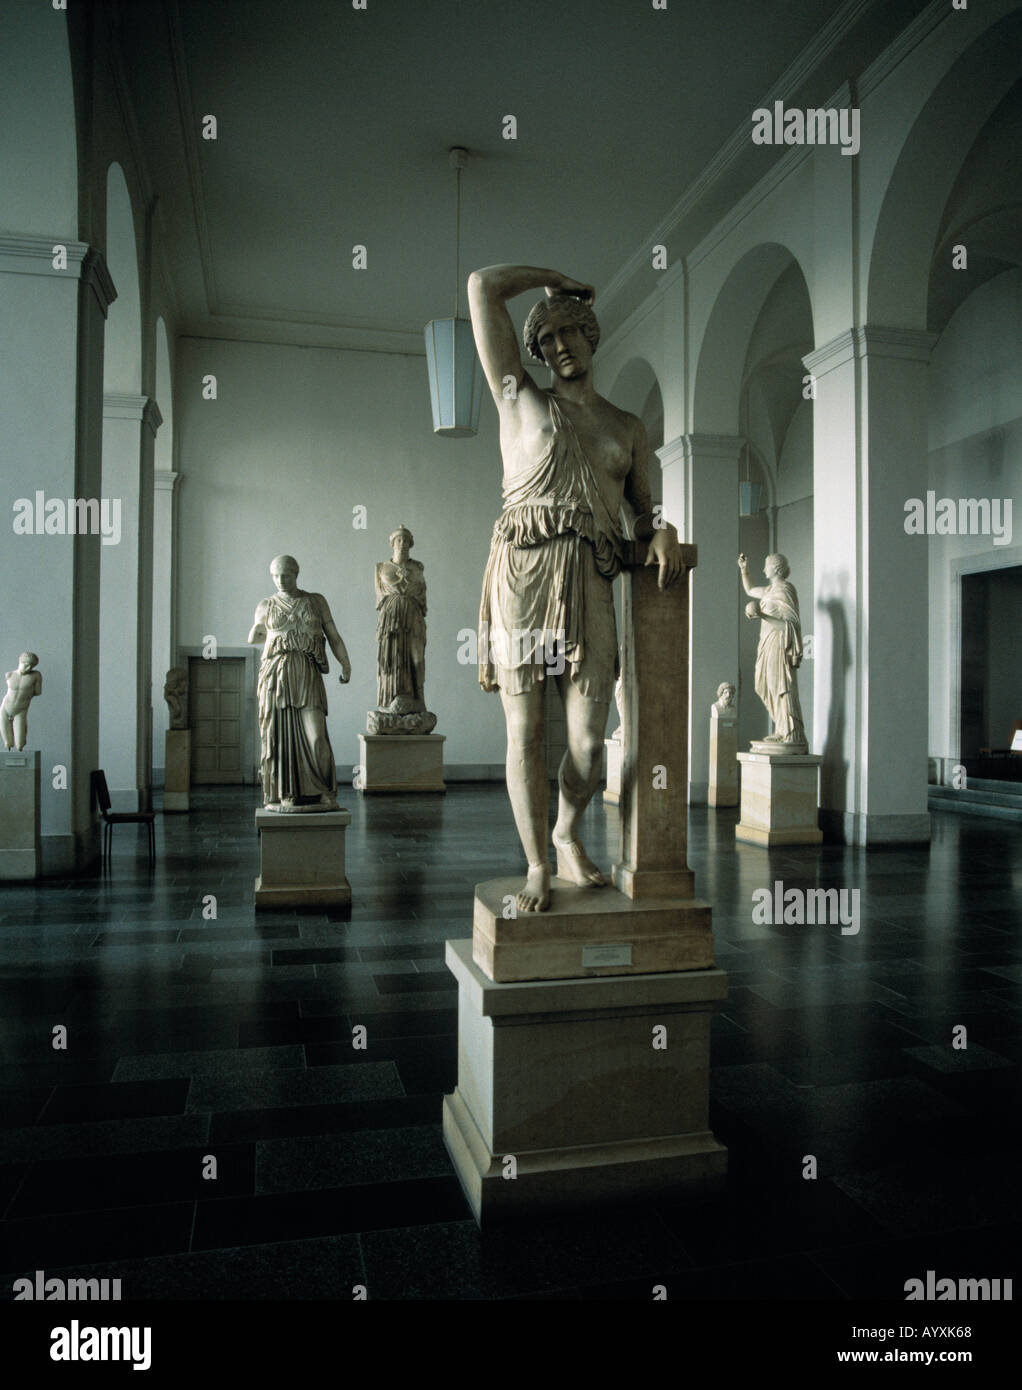 Griechische Statuen im Pergamonmuseum von Berlin Foto Stock